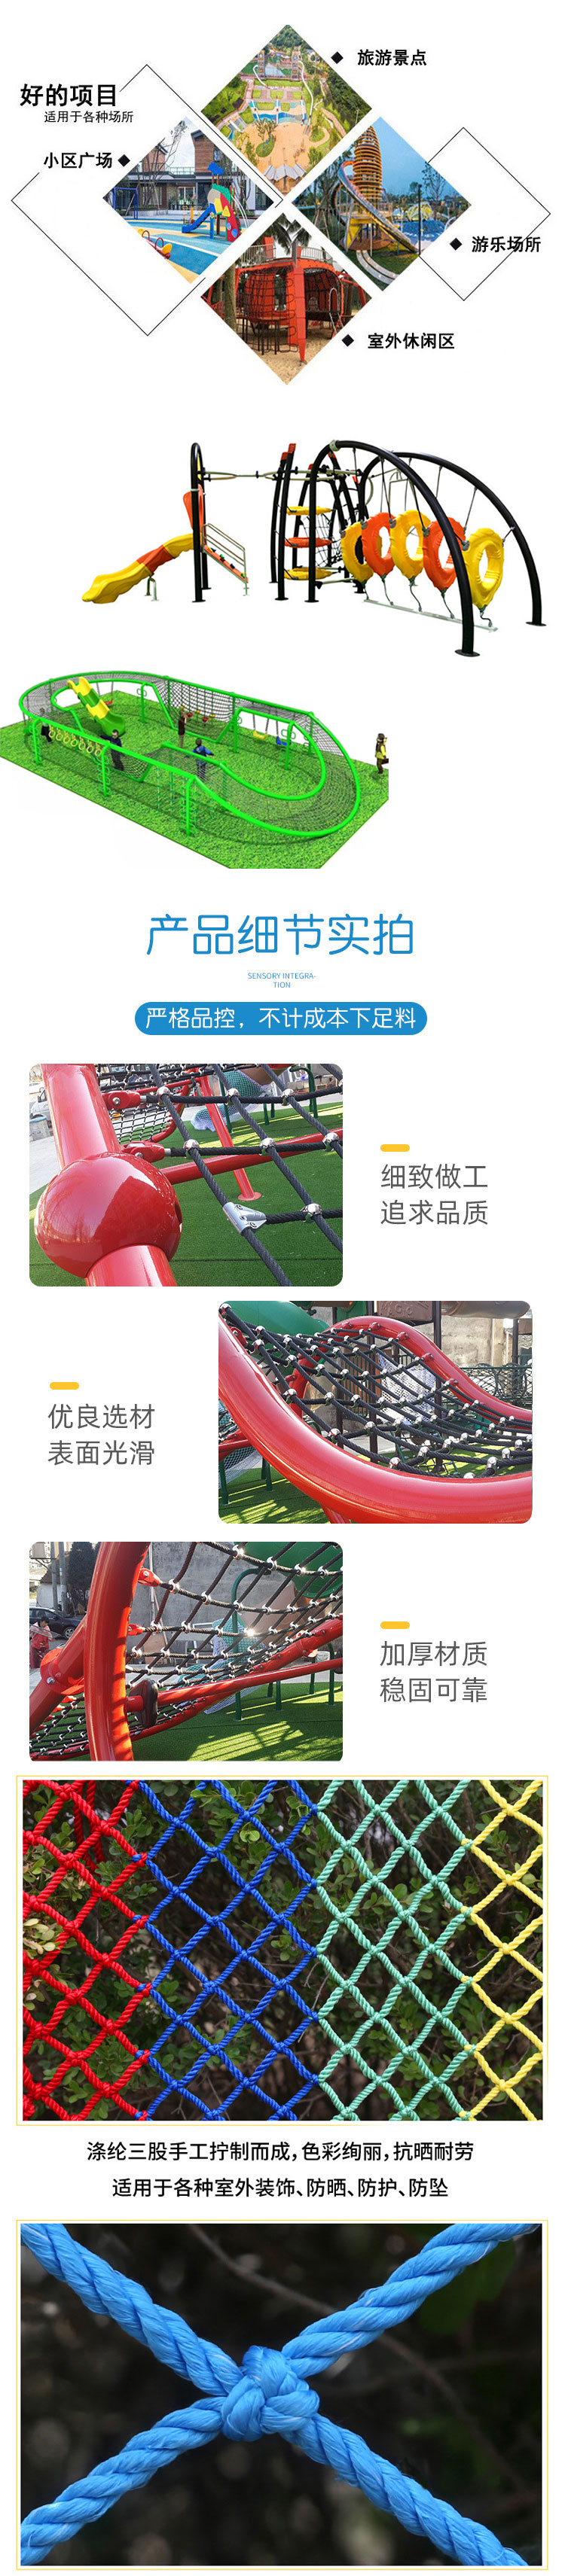 儿童新款儿童攀爬网户外公园 幼儿园健身攀爬架设备